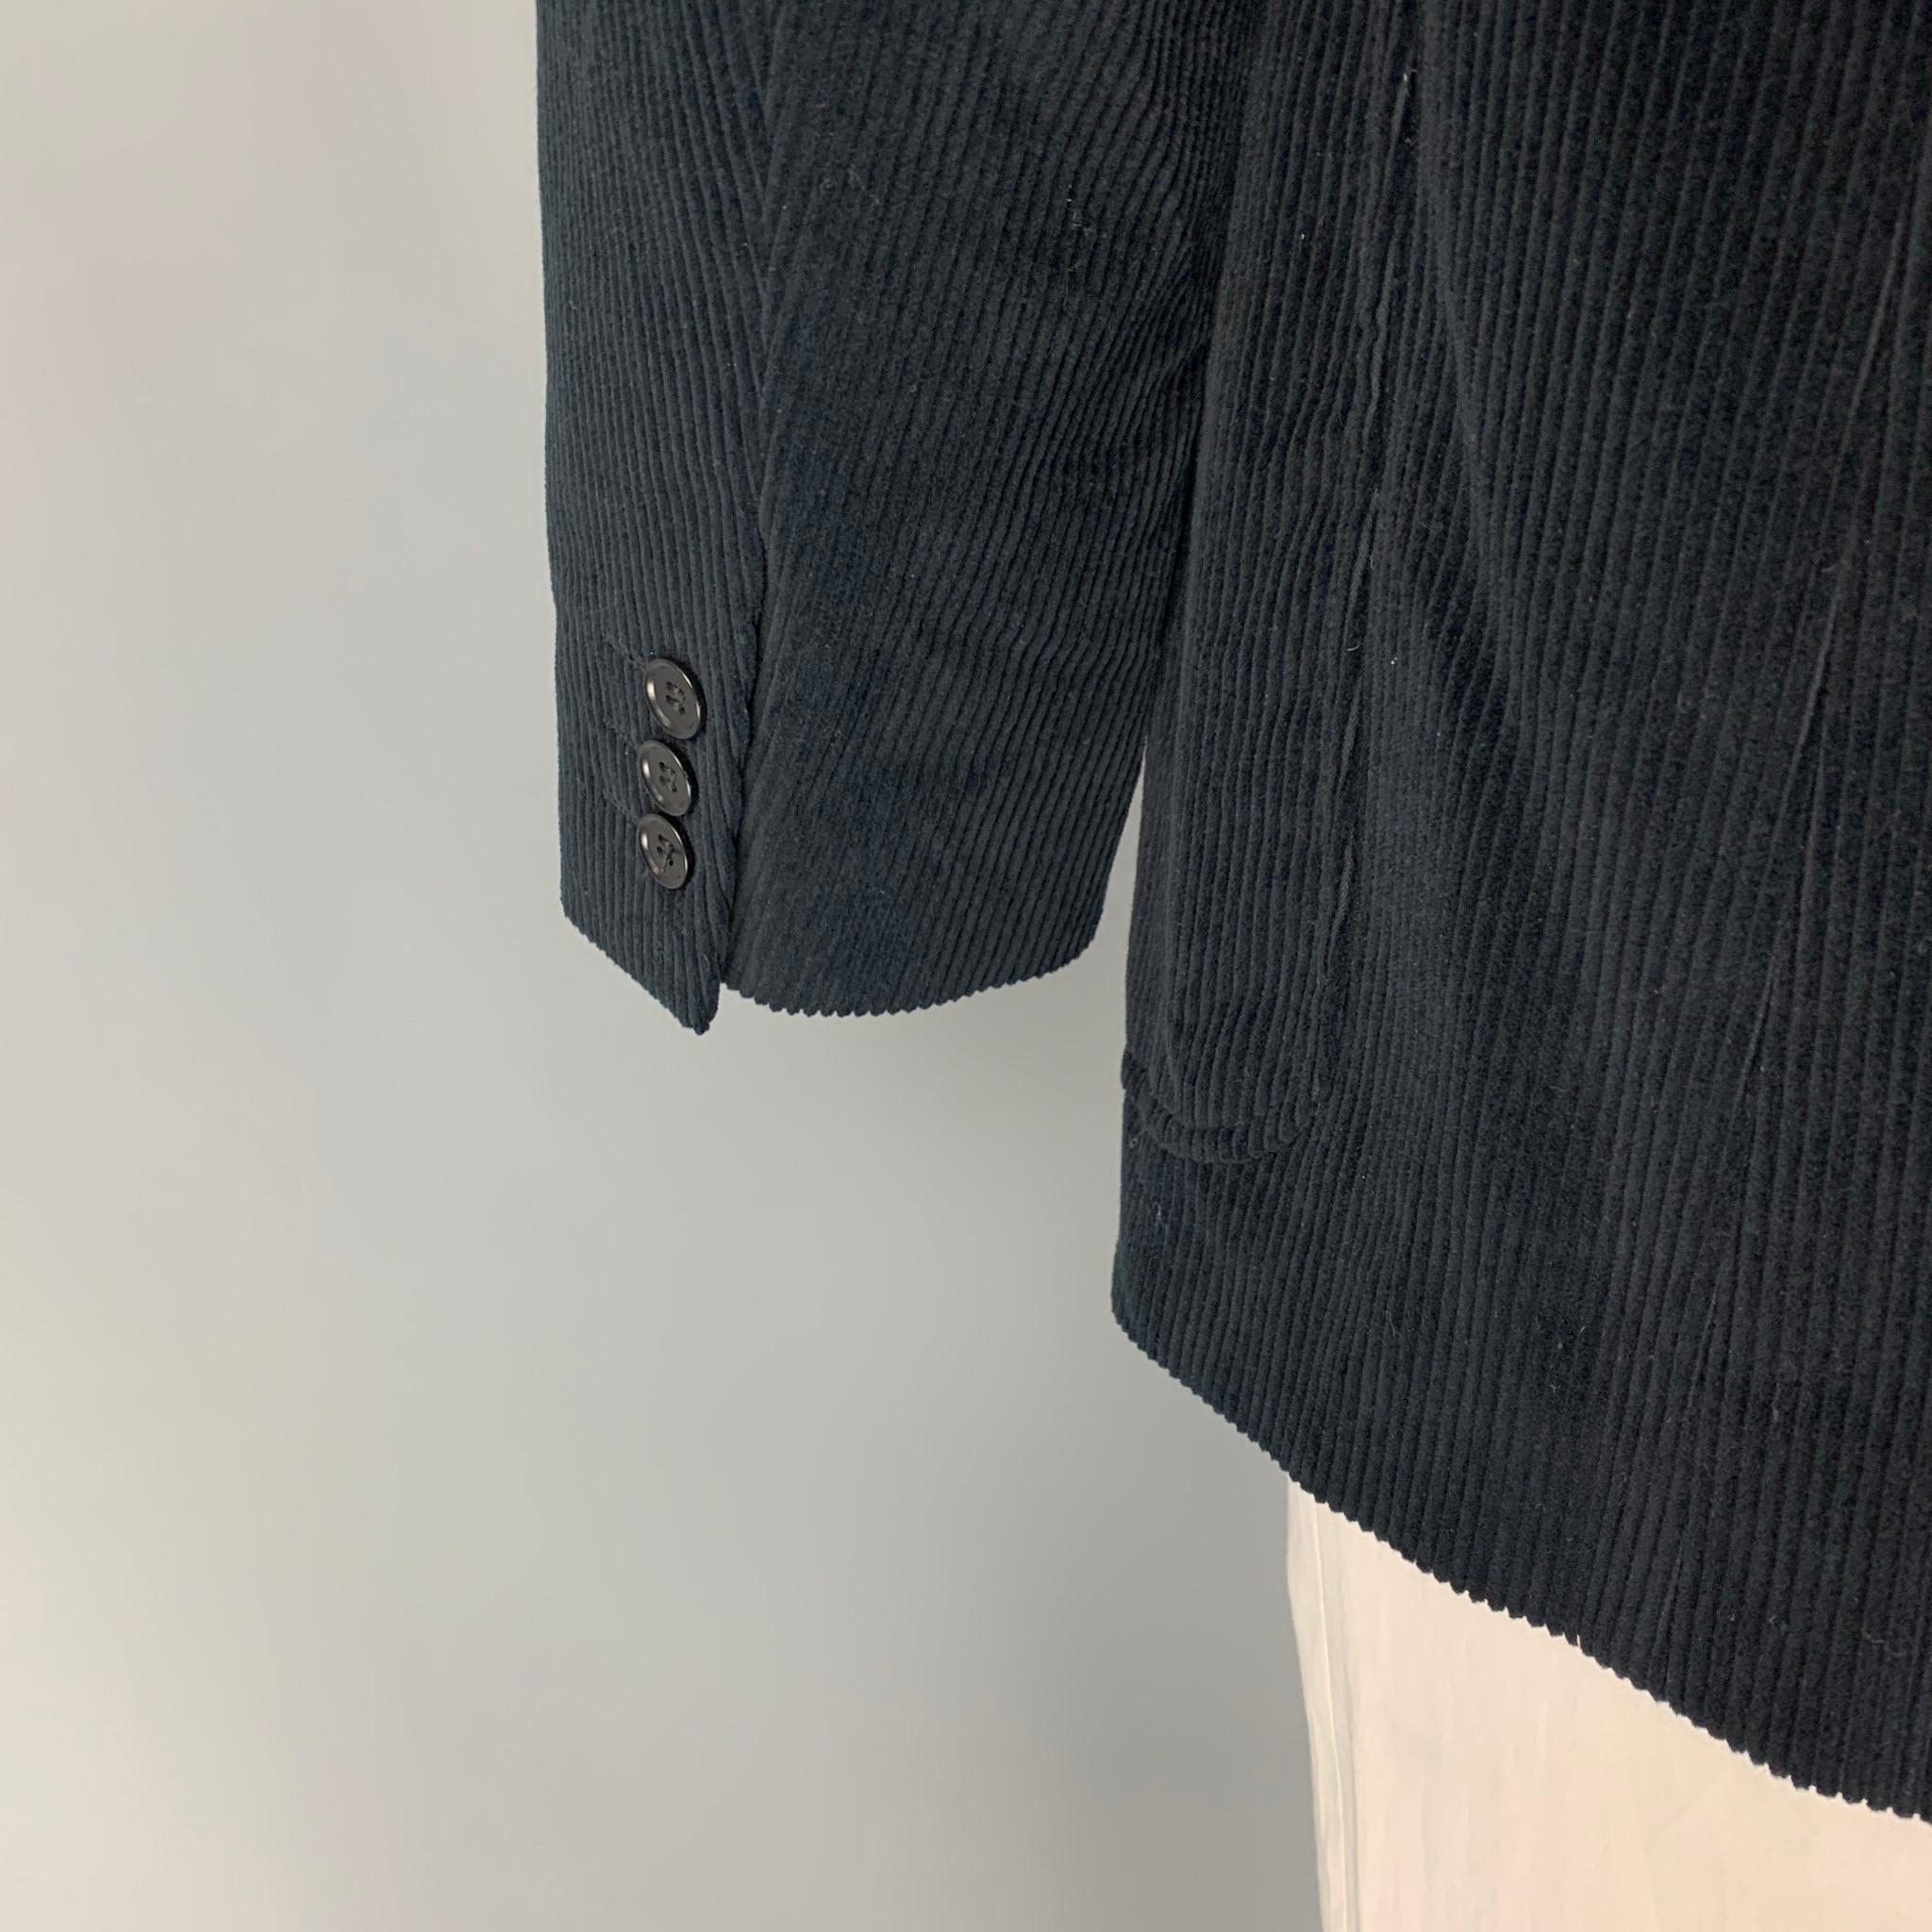 Men's CALVIN KLEIN COLLECTION Size 44 Black Corduroy Cotton Sport Coat